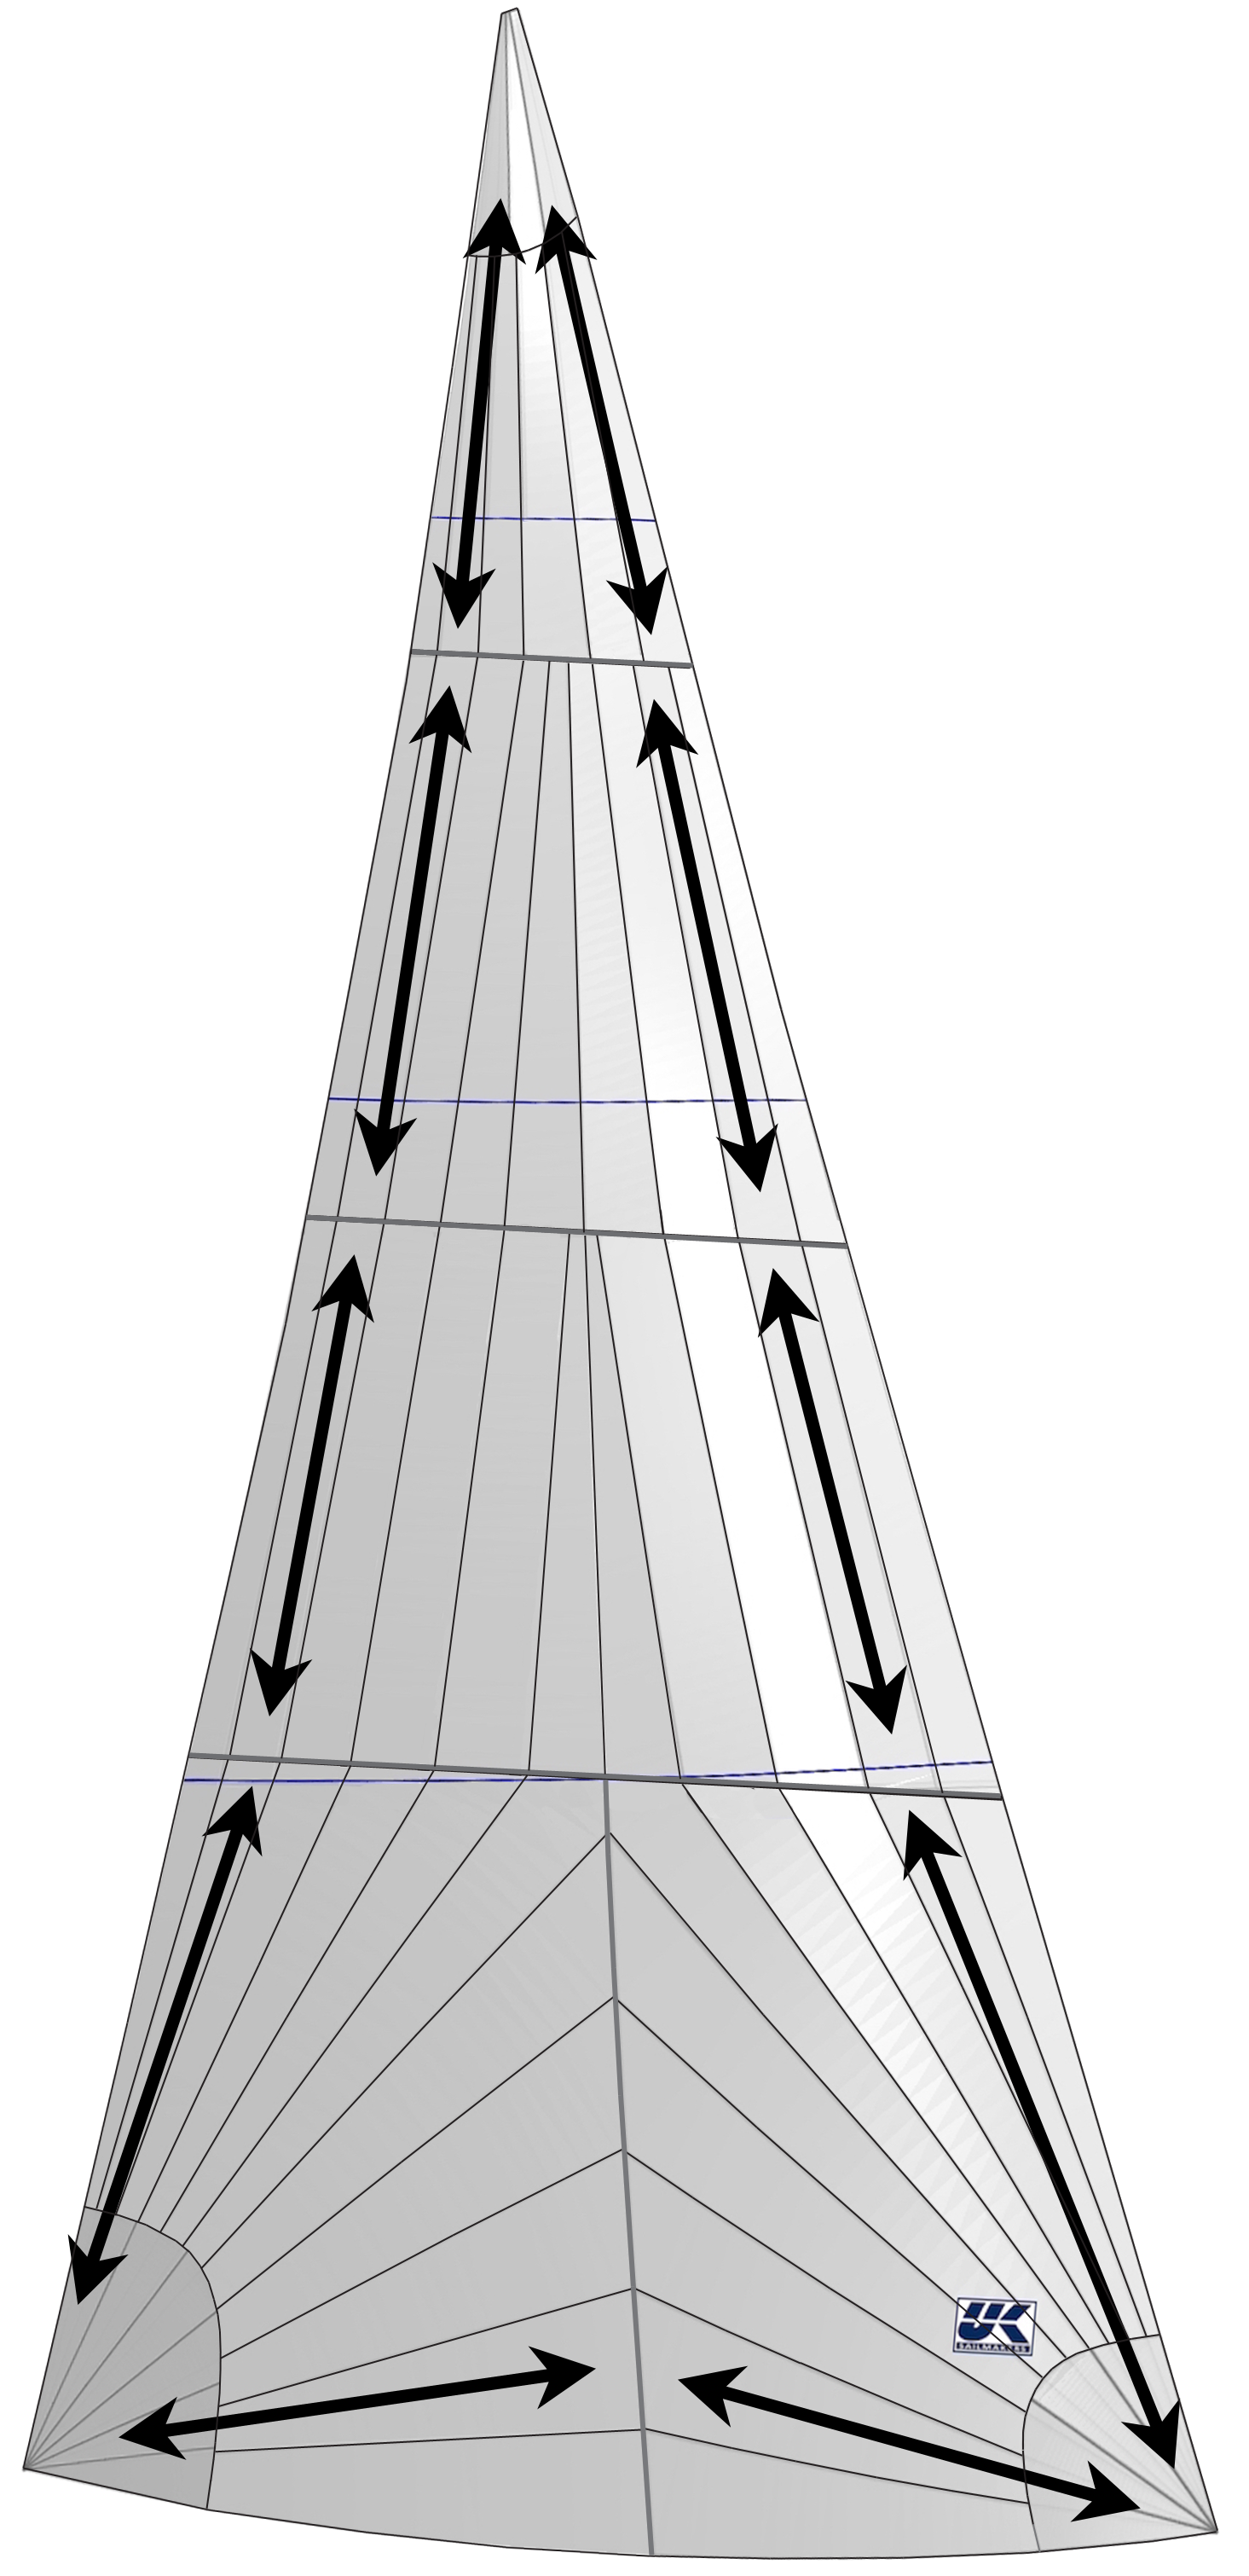 Bei der radialen Anordnung werden die stärksten Fäden des Laminats annähernd auf die Hauptlasten ausgerichtet, die zwischen den Ecken des Segels verlaufen.